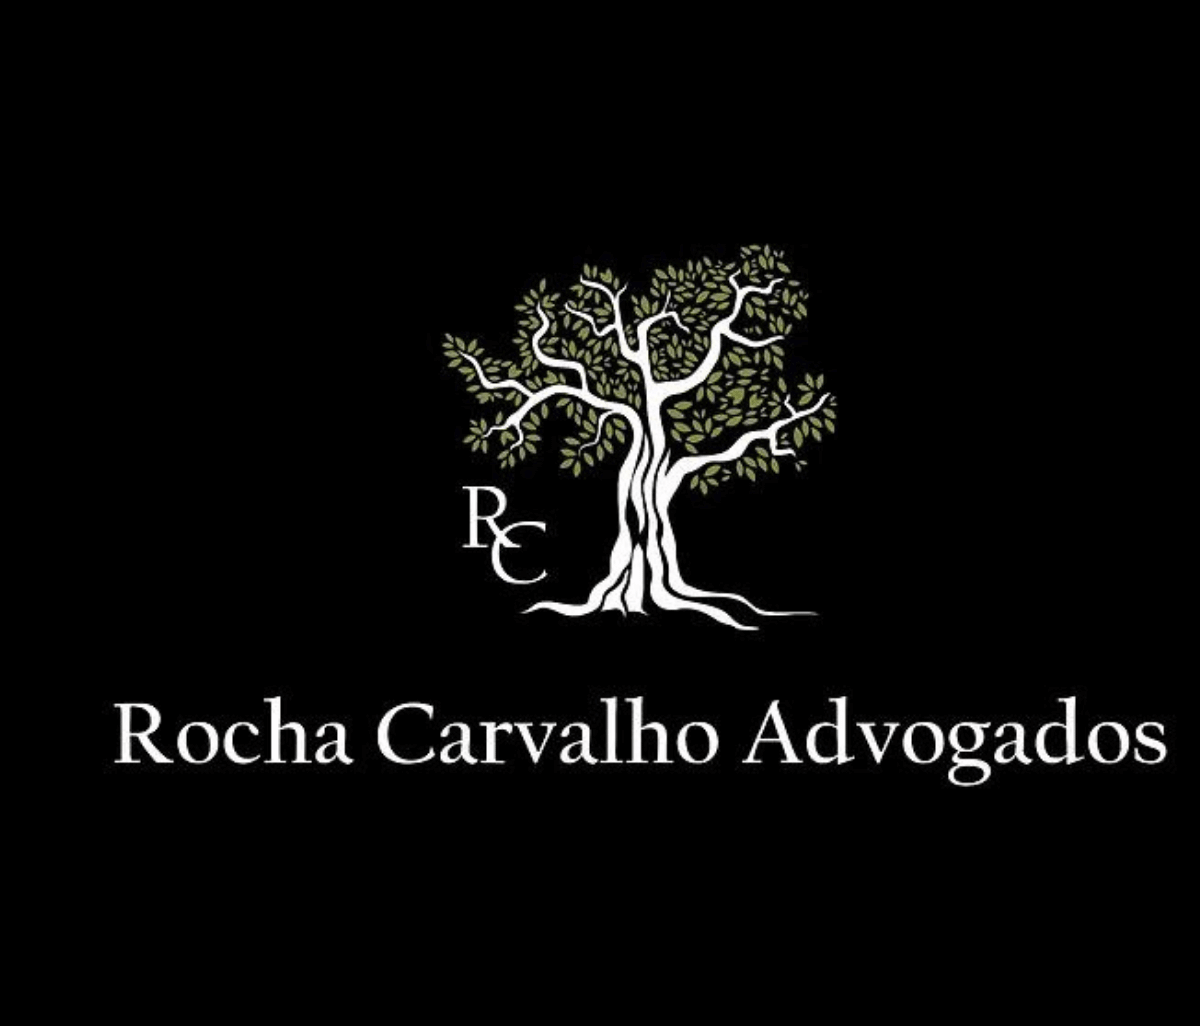 Rocha Carvalho Advogados